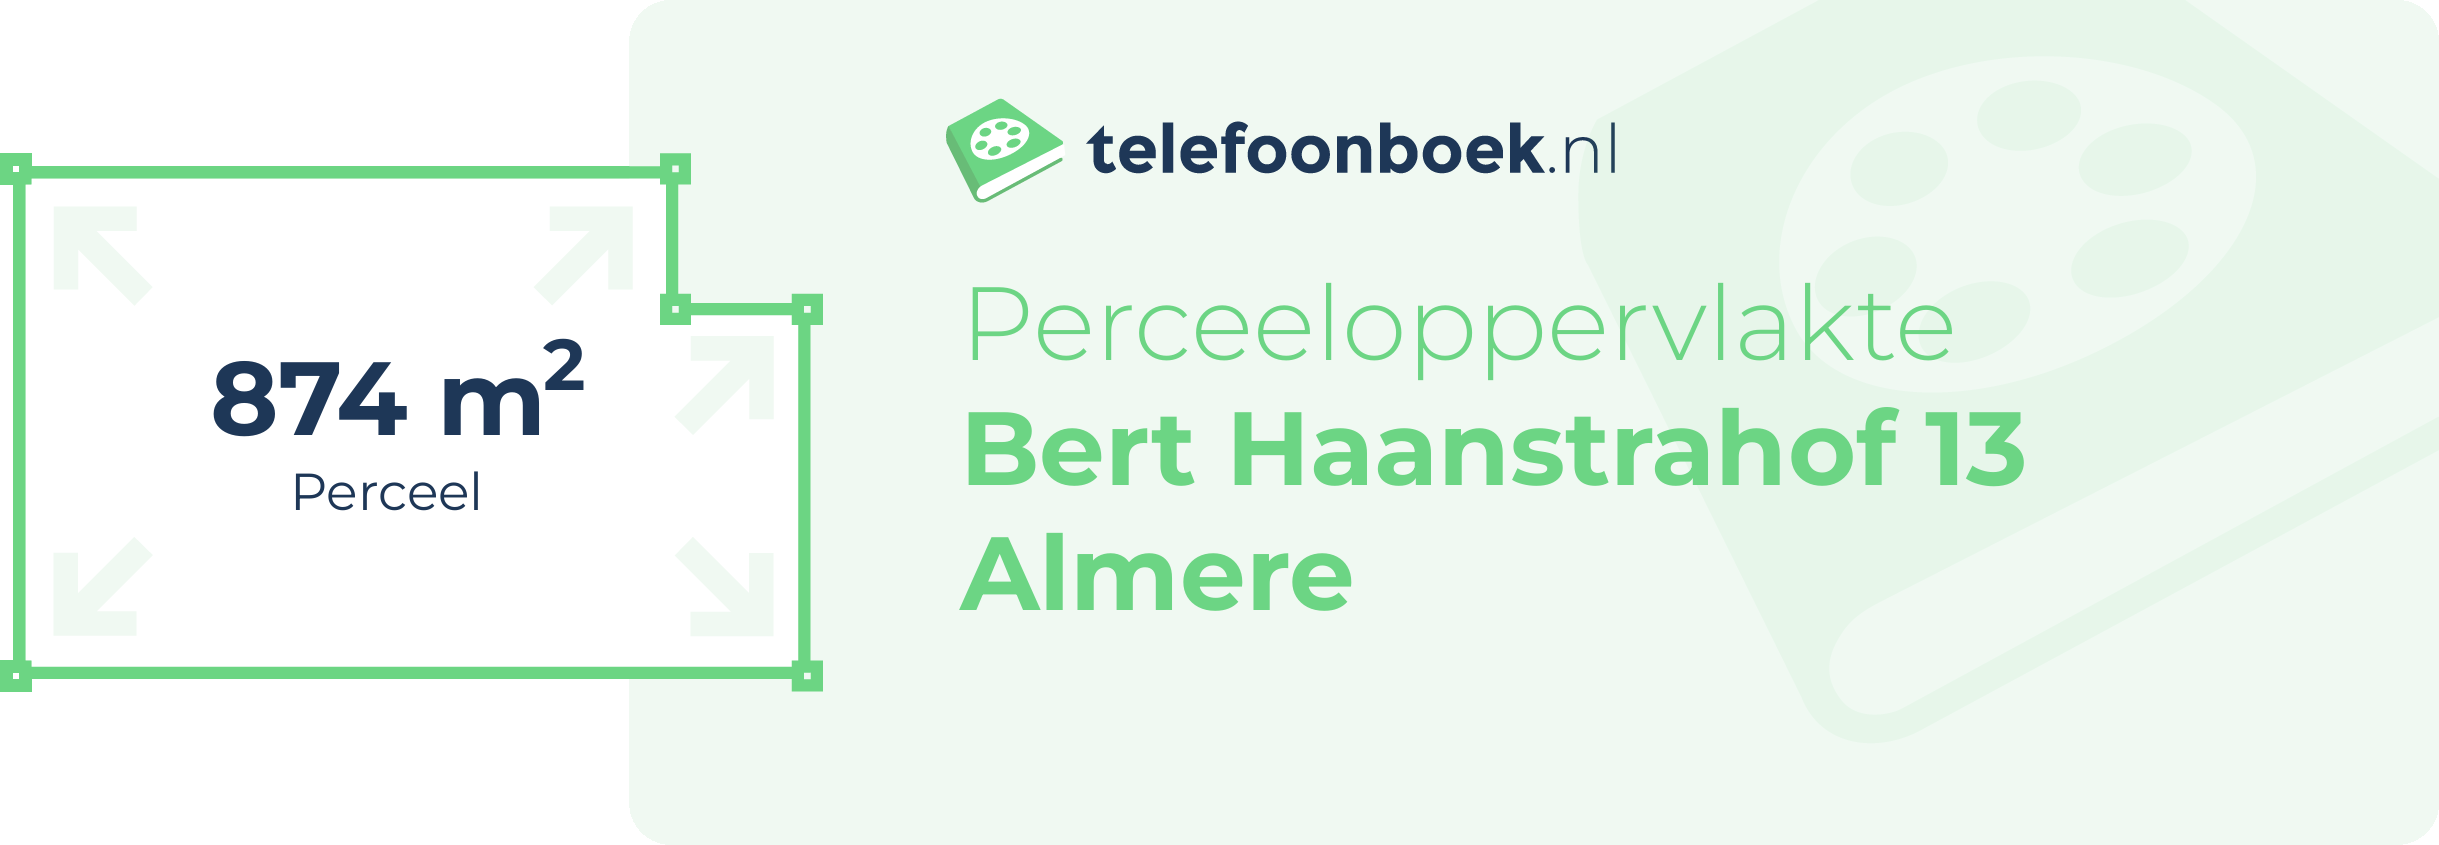 Perceeloppervlakte Bert Haanstrahof 13 Almere